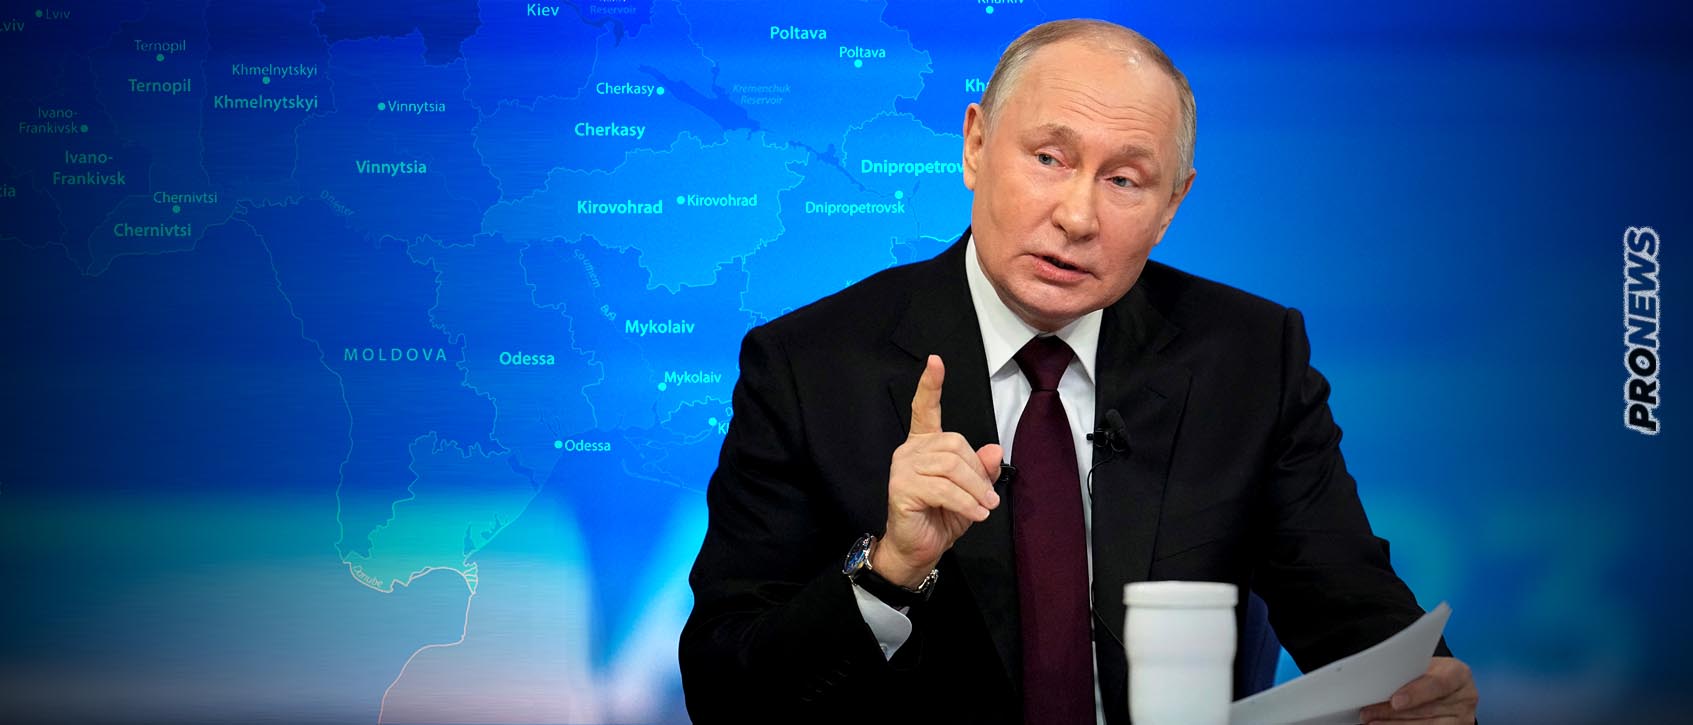 Β.Πούτιν: «Θα μιλήσω με οποιονδήποτε πρόεδρο των ΗΠΑ αλλά να είναι πιο προσεκτικός με τη Ρωσία»